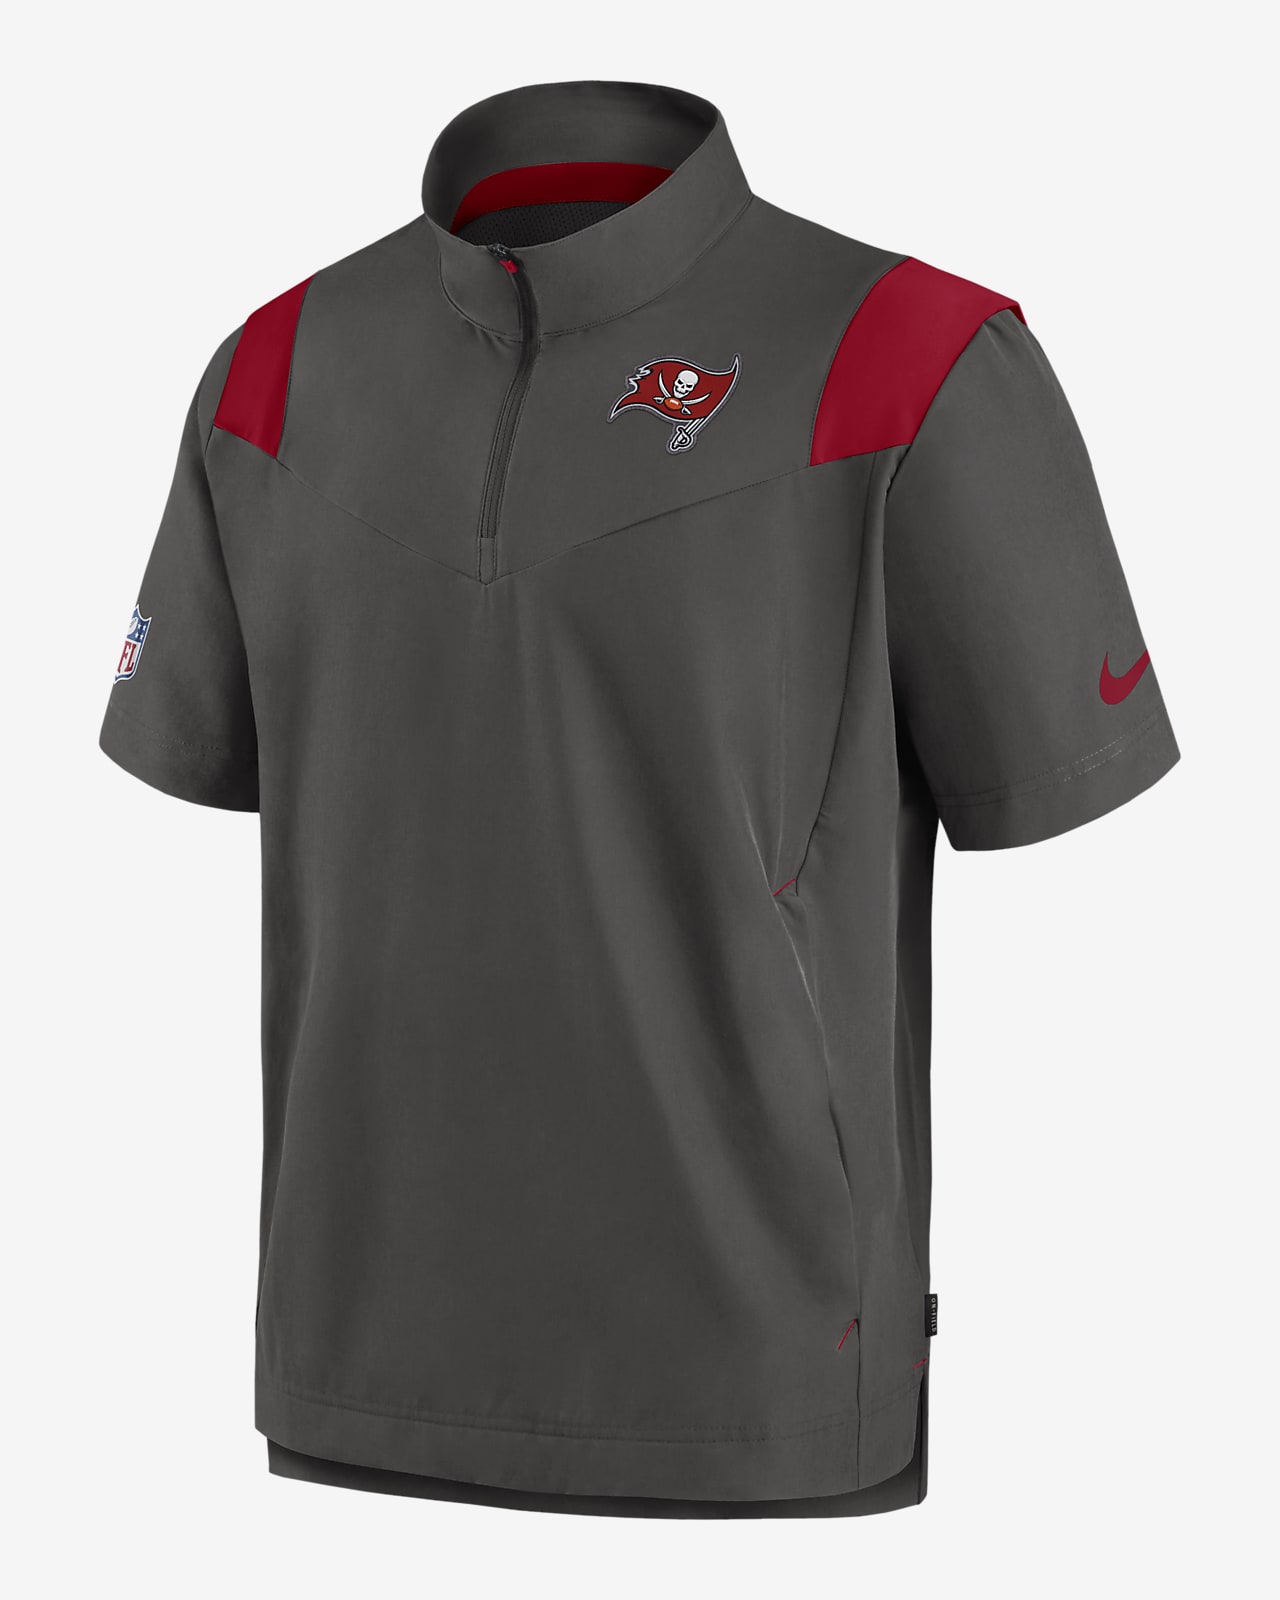 Nike Sideline Coach Lockup (NFL Tampa Bay Buccaneers) Men's Short-Sleeve Jacket